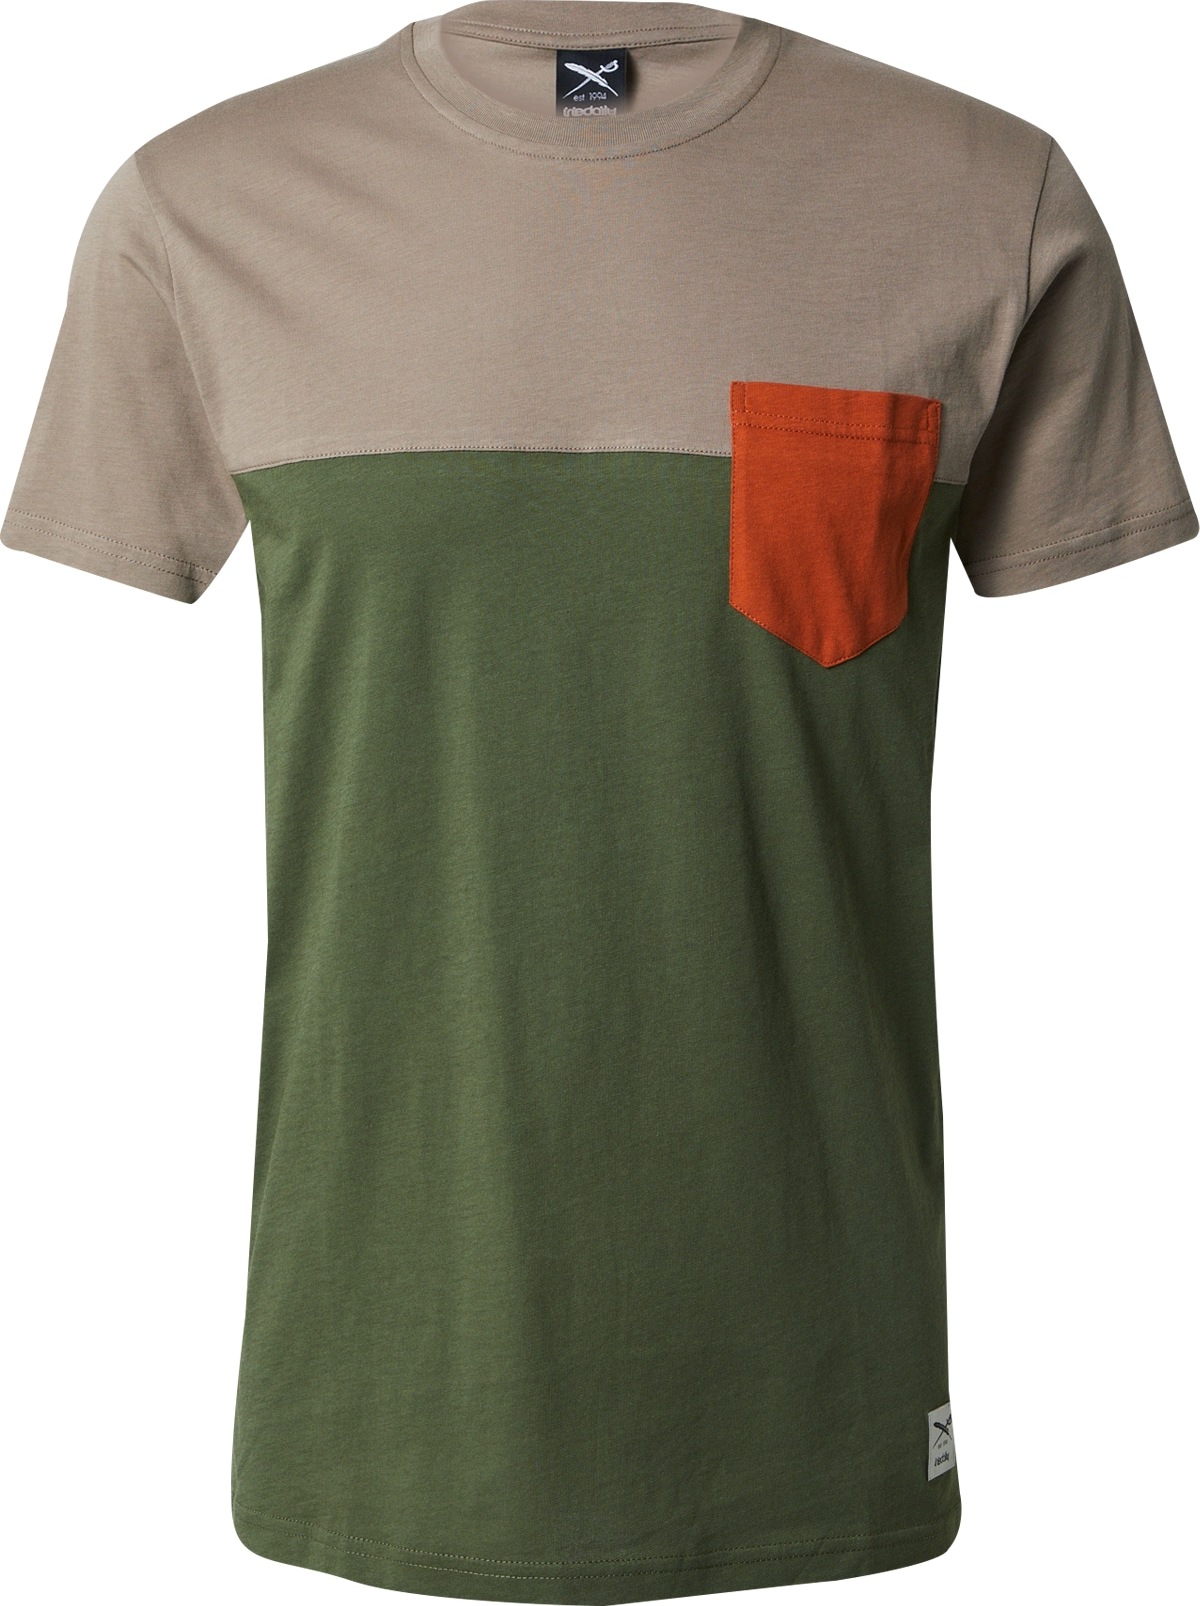 Tričko Iriedaily tmavě béžová / tmavě zelená / tmavě oranžová / bílá